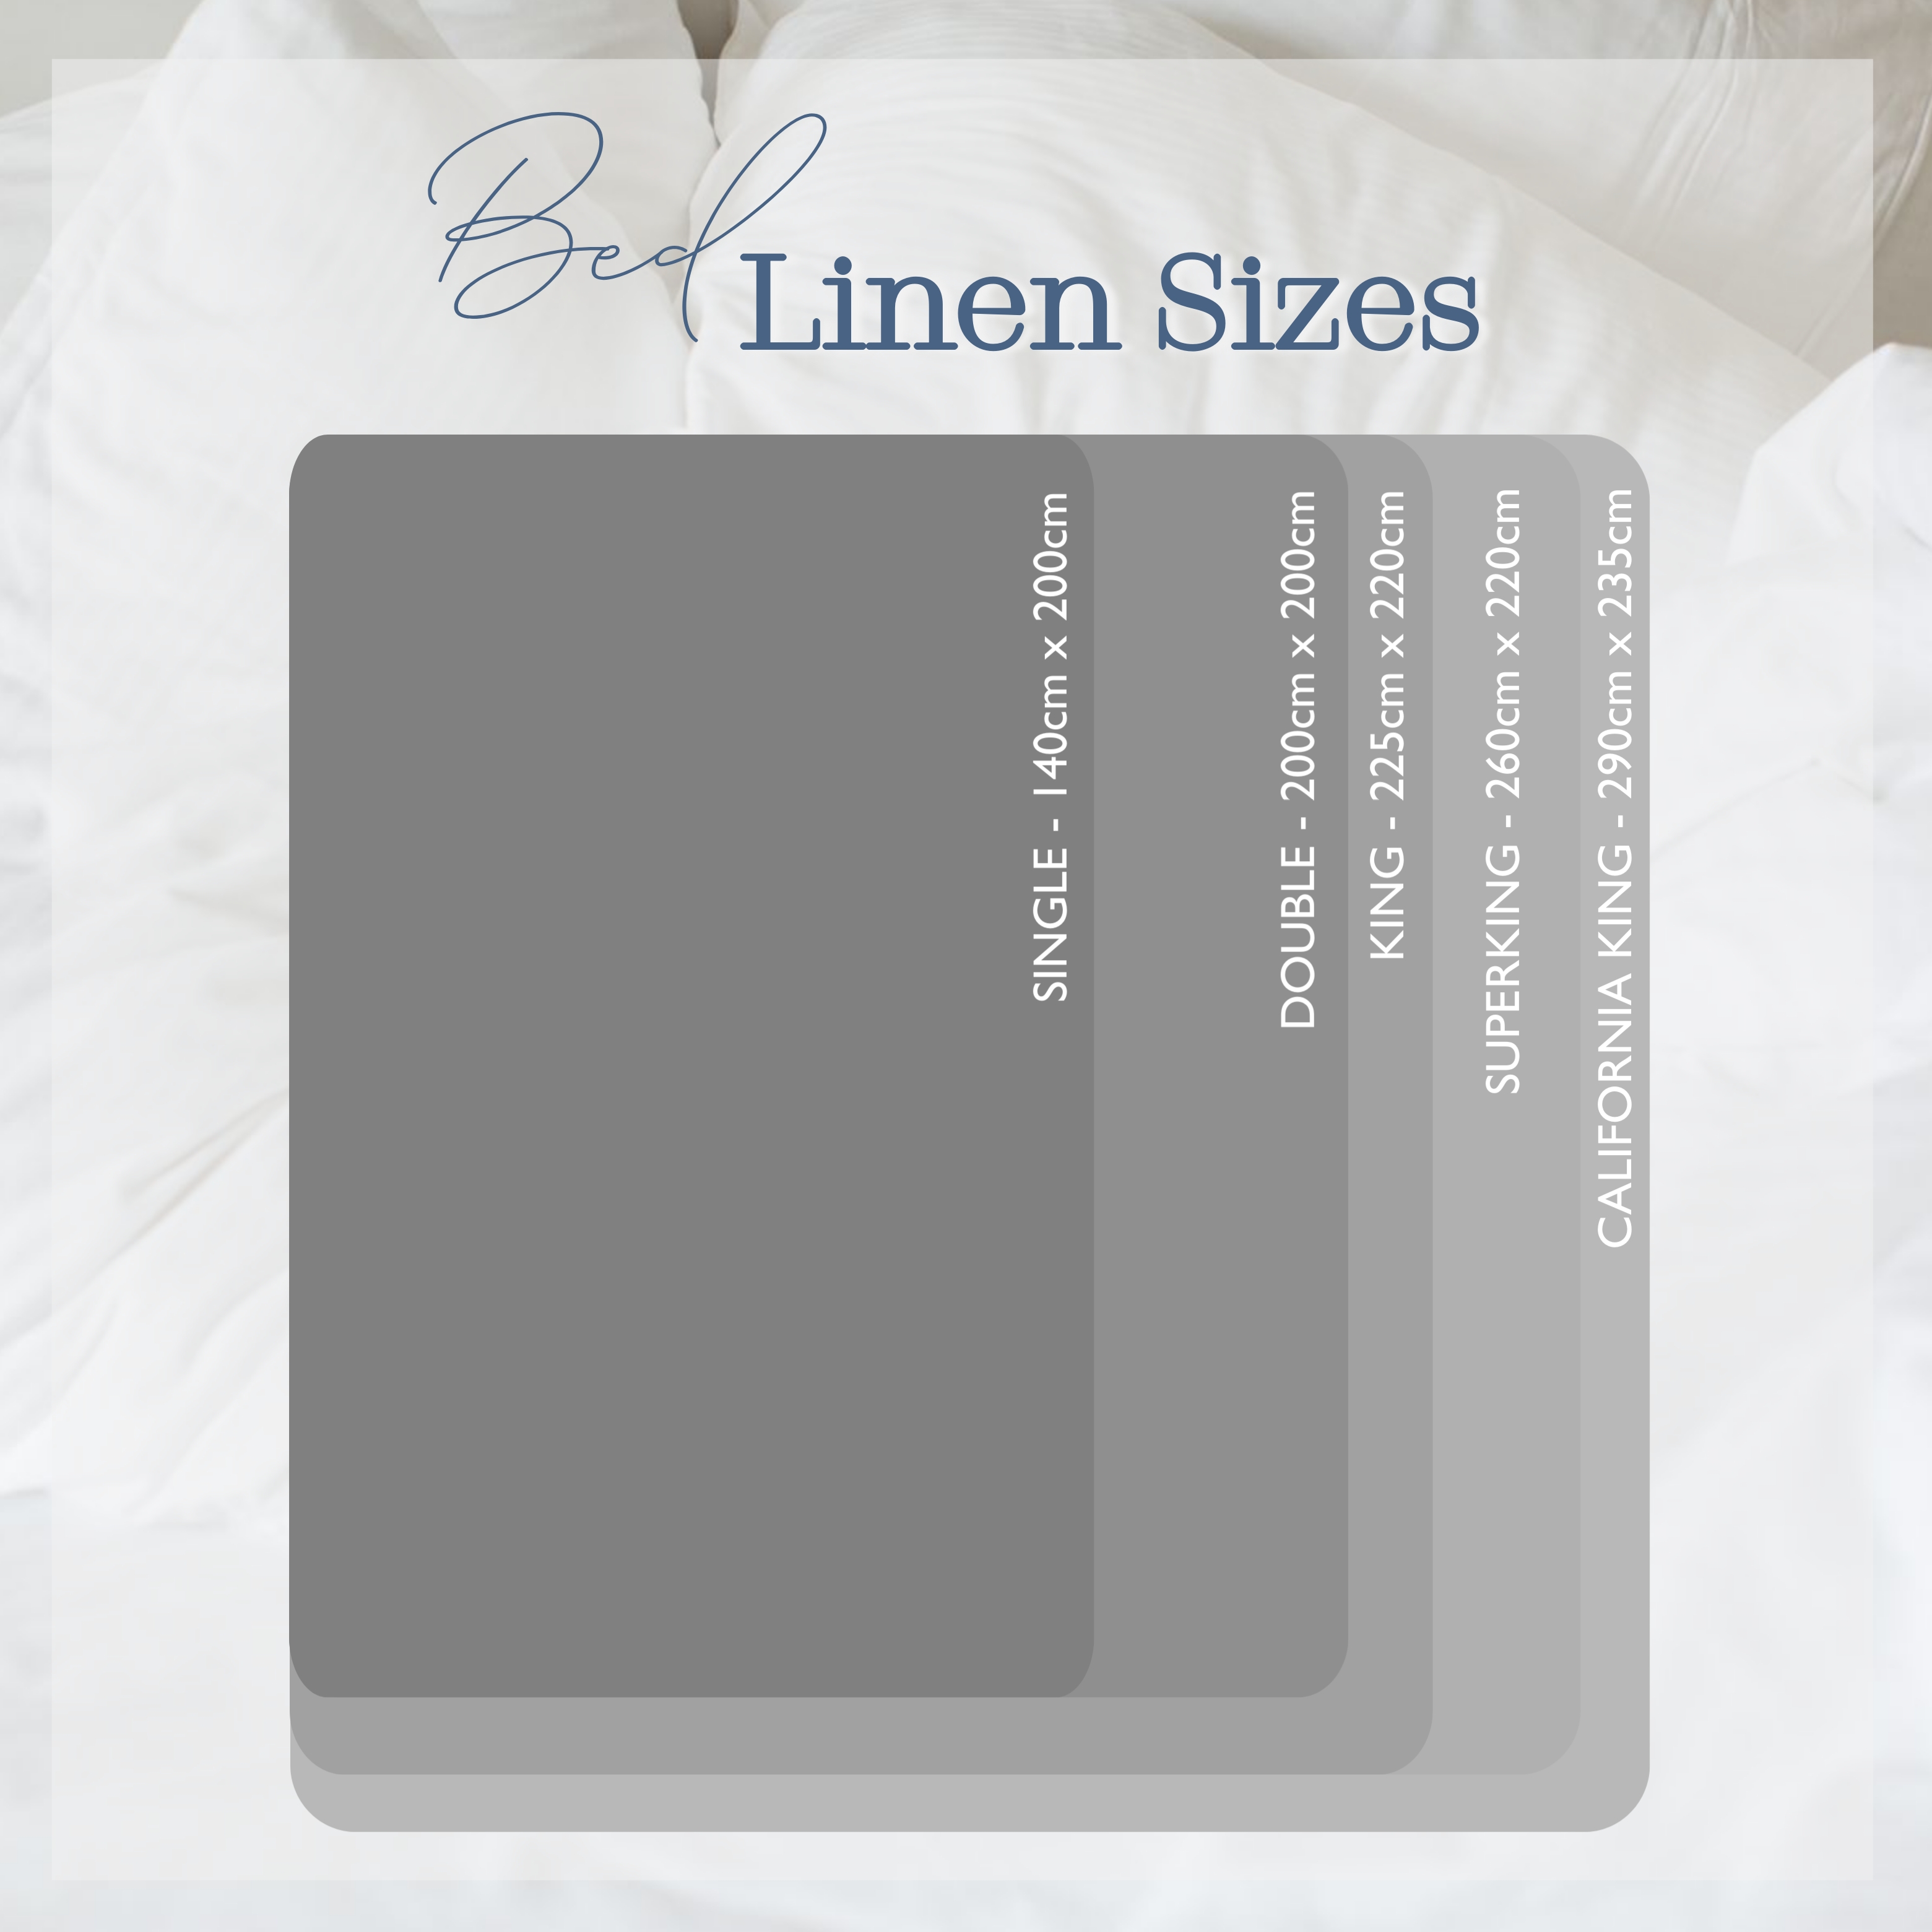 UK Ben Linen Size Guide